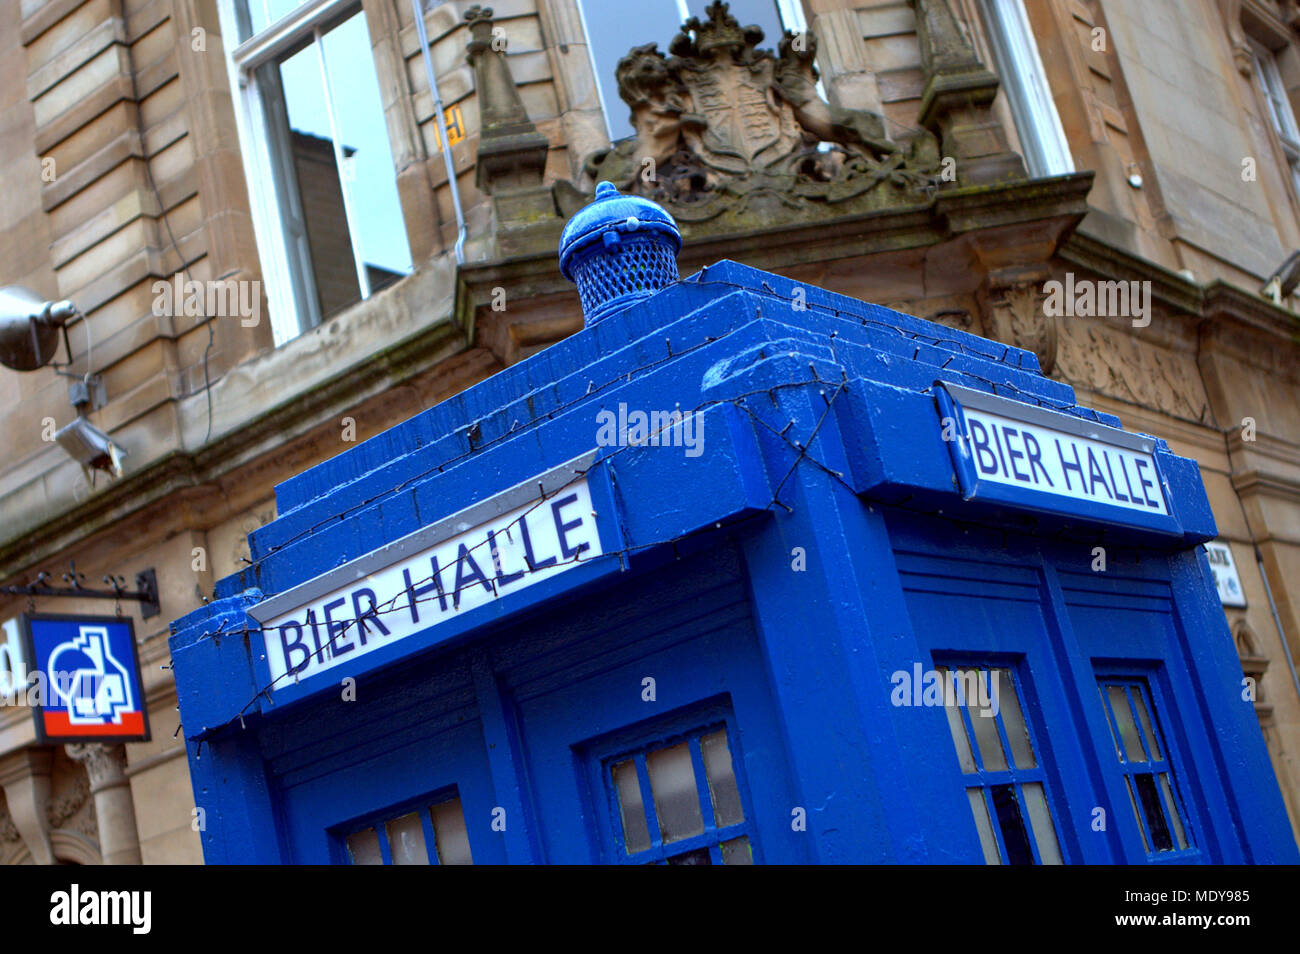 La più piccola sala della birra ? Beir halle un mock up del tardis blue box di polizia al di fuori del sito di nuovo ristorante edera Buchanan Street, Glasgow, Regno Unito Foto Stock